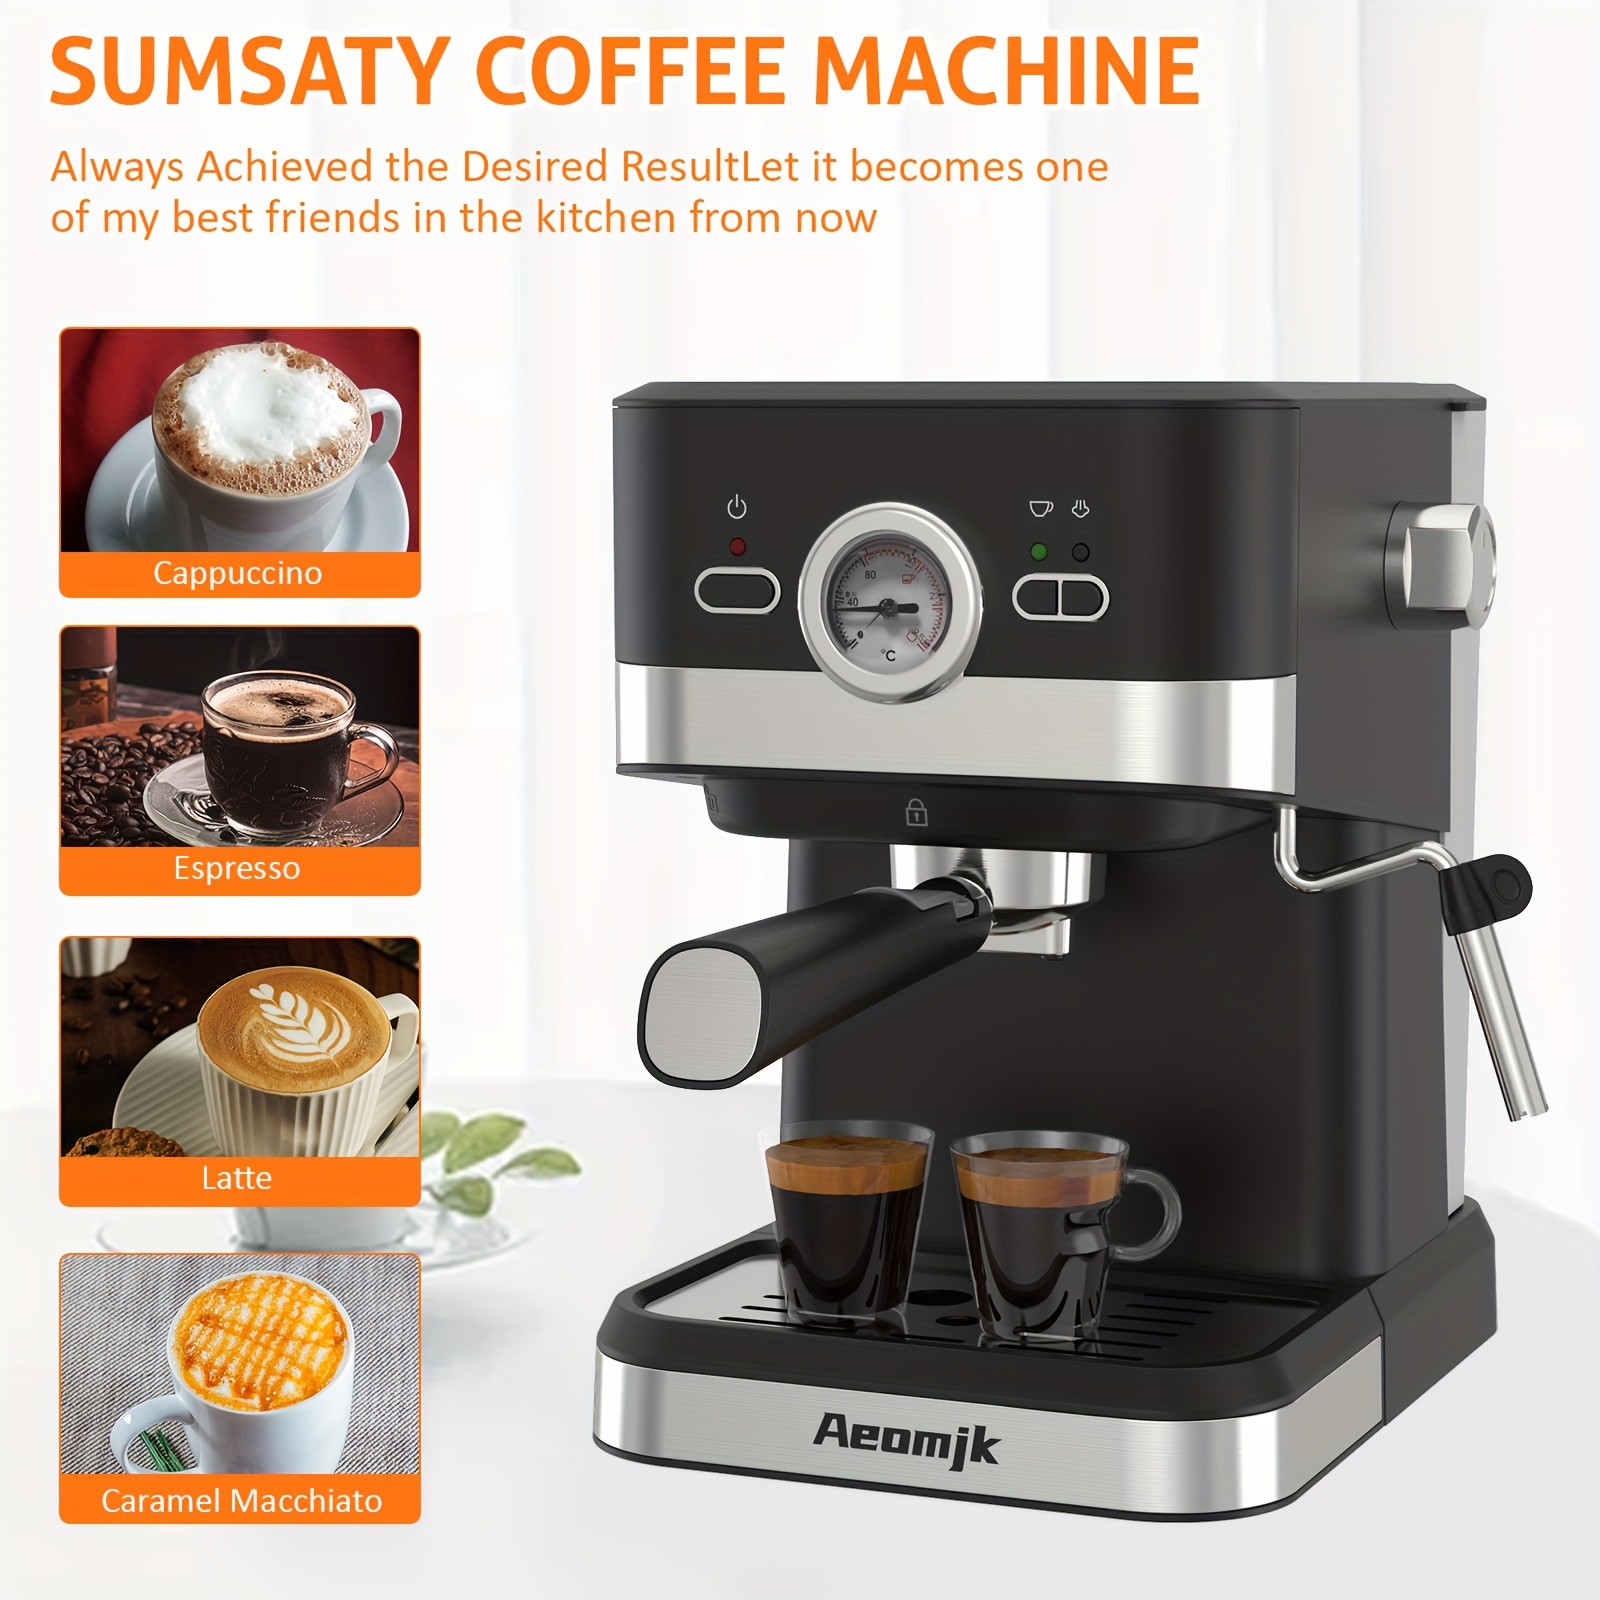  Máquina de café espresso Cafetera, cafetera americana de 20.3  fl oz, botón de un solo toque, cafetera instantánea de goteo con tecnología  de preparación rápida, viajes y cocina pequeña disponible, 600